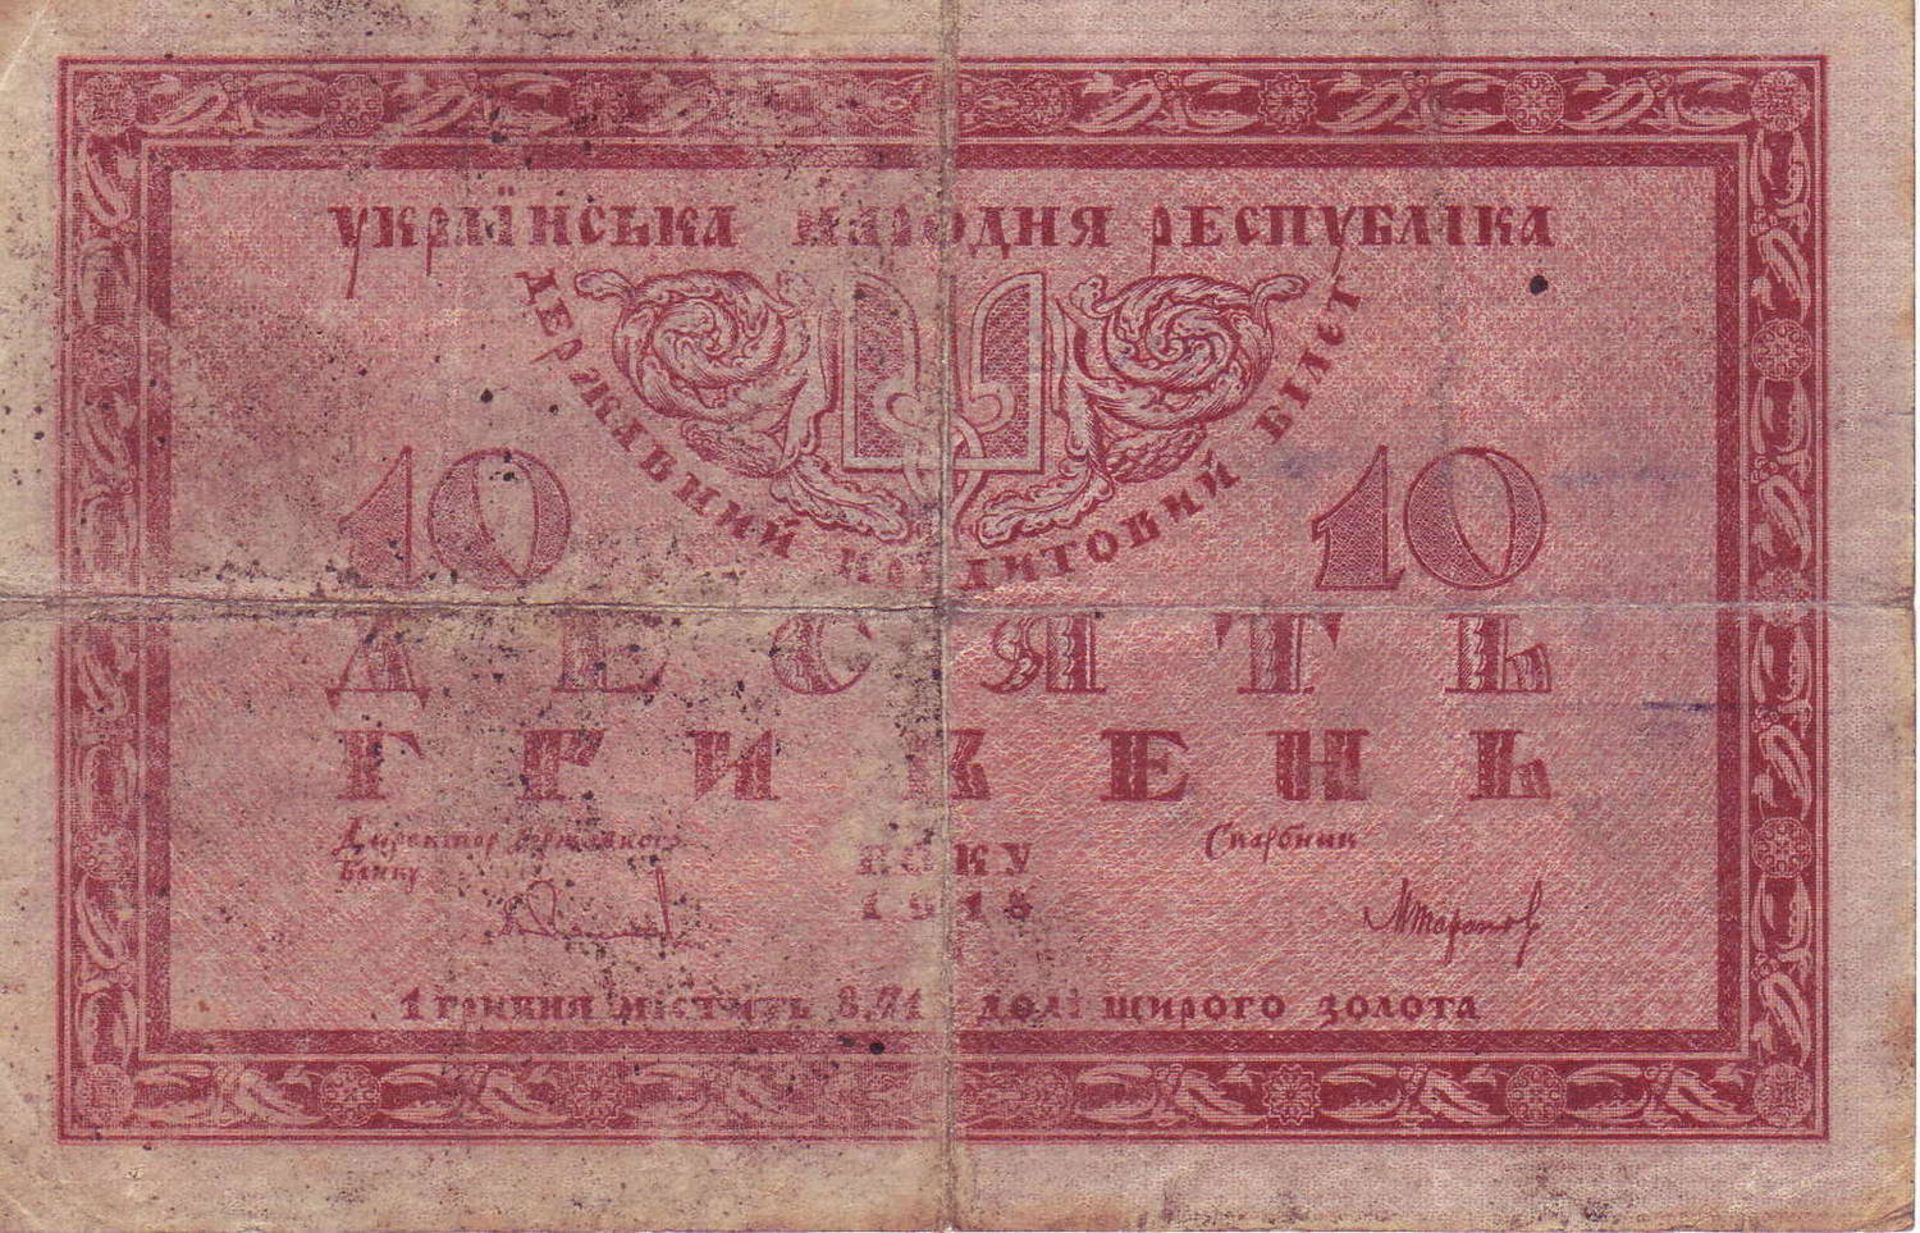 Ukraine 1918, 10 Hryven - Banknote. Faltspuren.Ukraine 1918, 10 Hryven - banknote. Folds.- - -20.